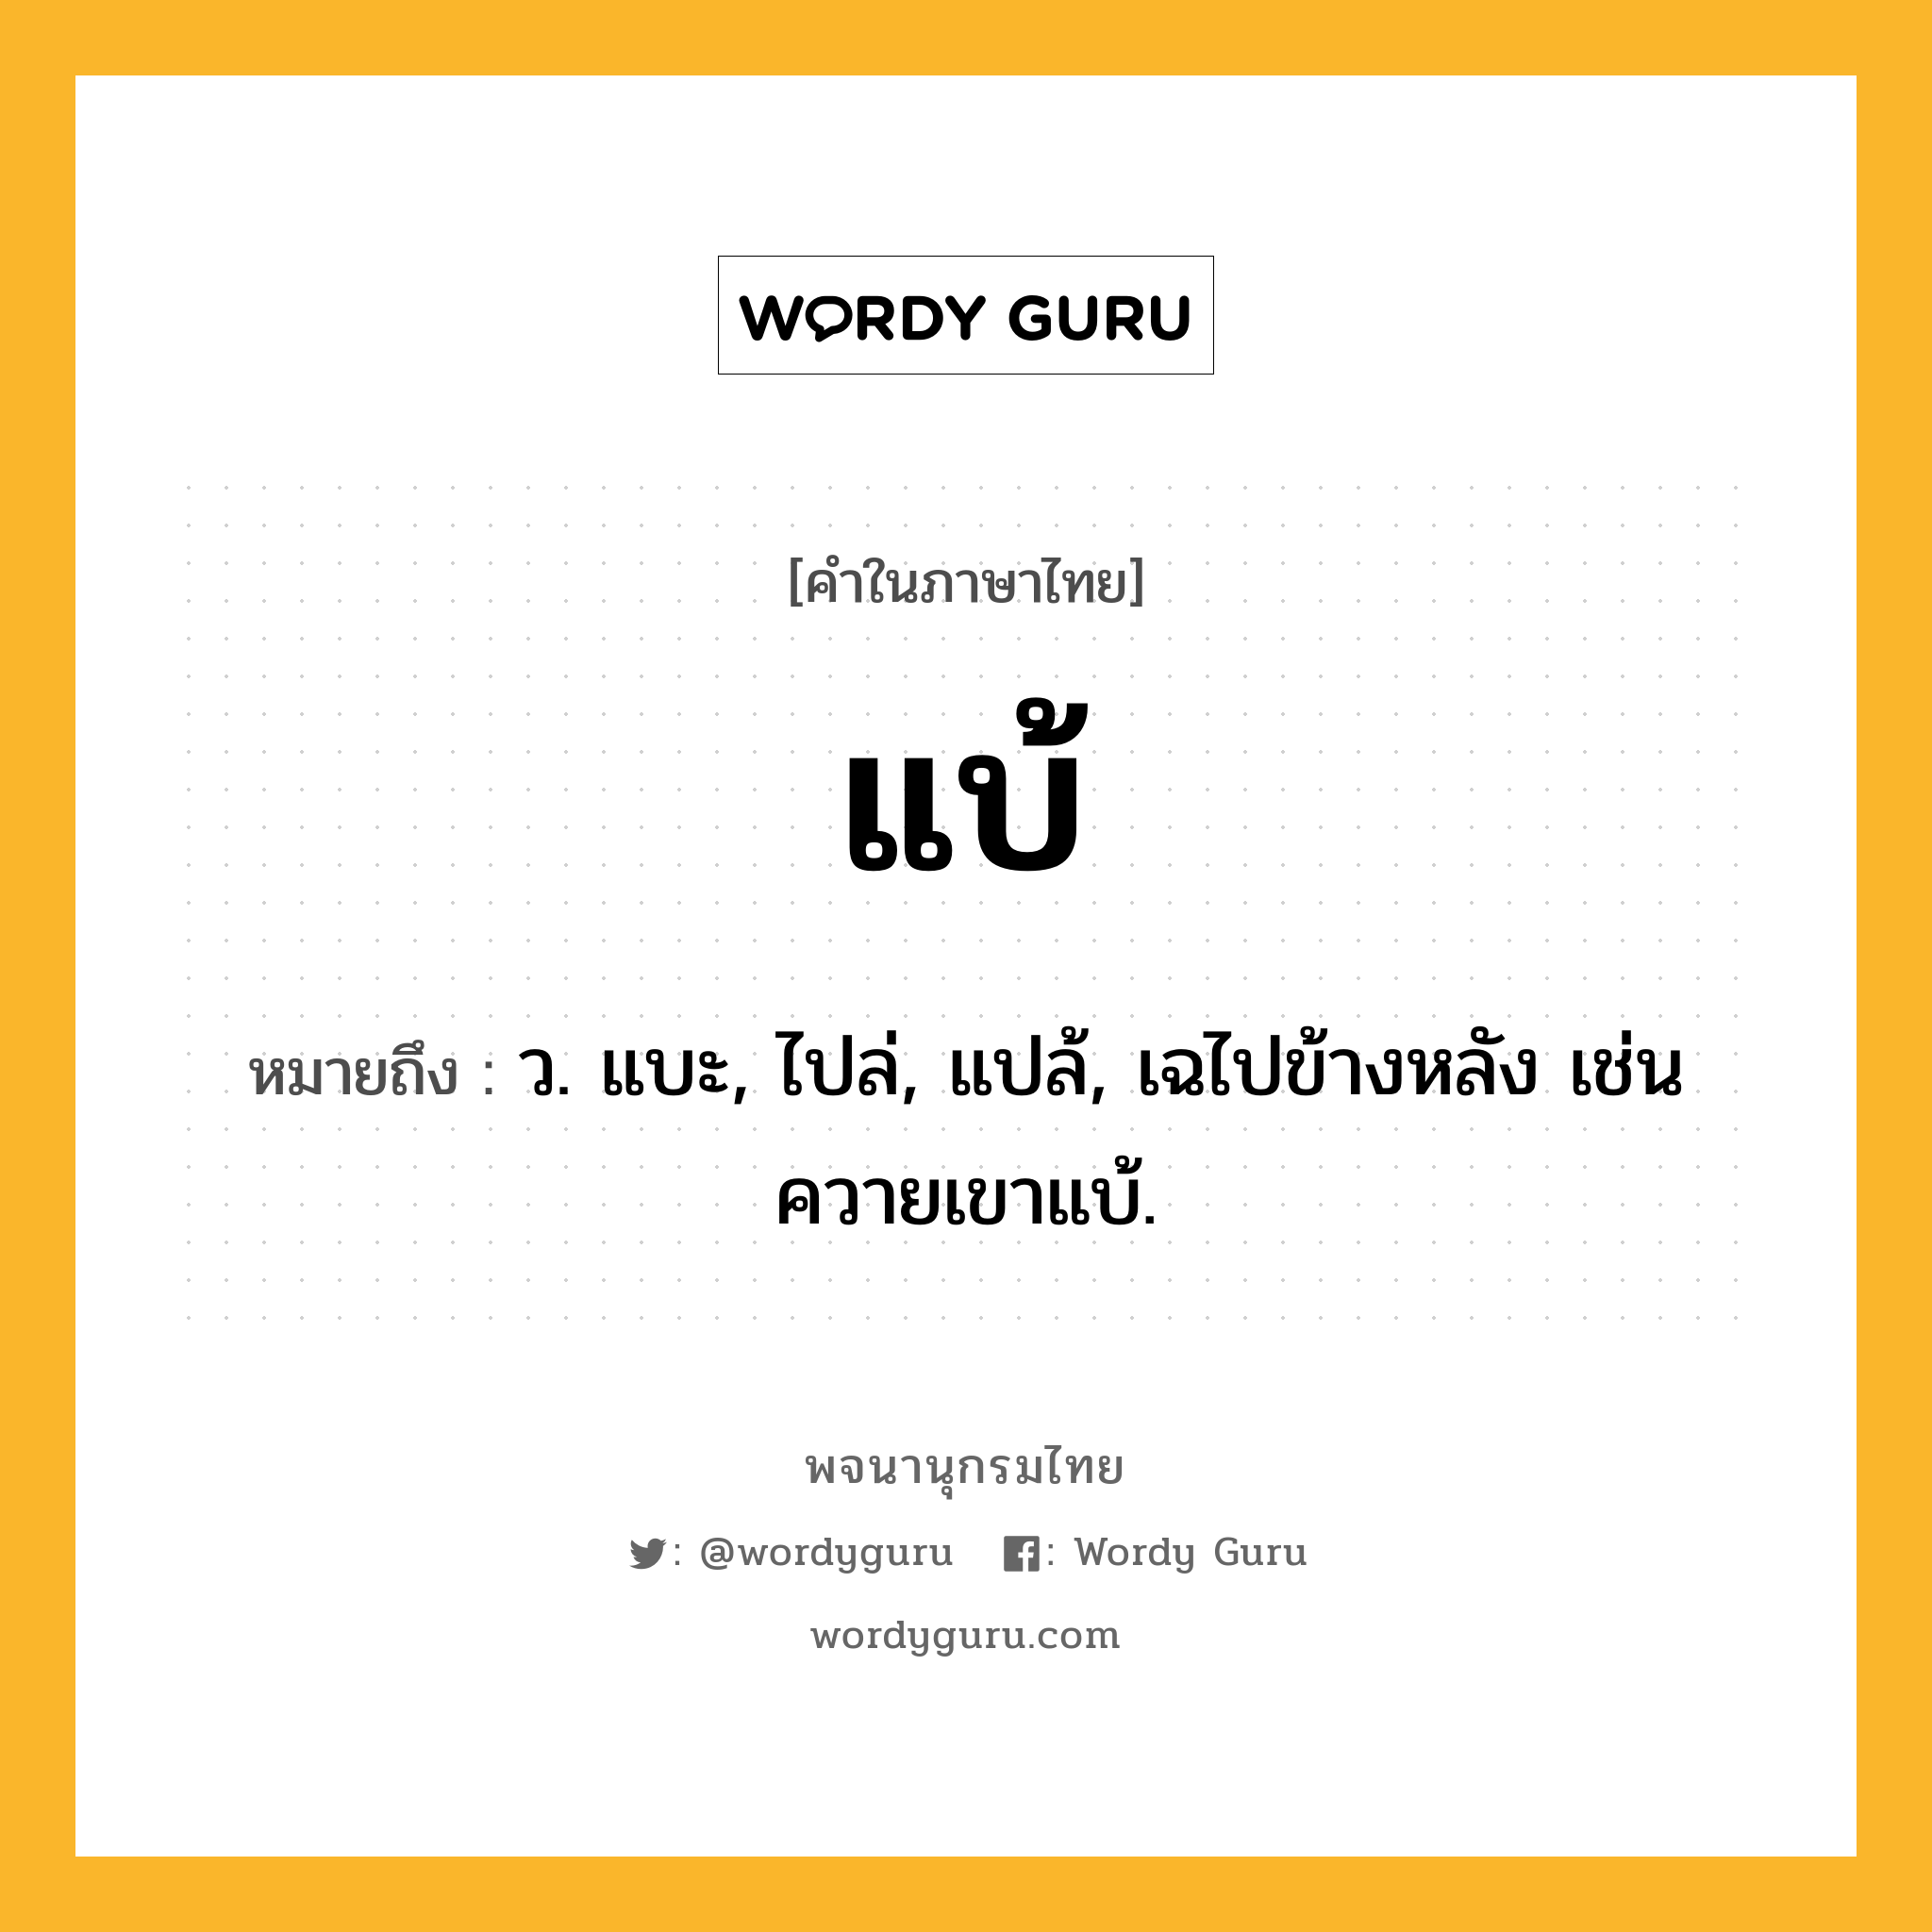 แบ้ หมายถึงอะไร?, คำในภาษาไทย แบ้ หมายถึง ว. แบะ, ไปล่, แปล้, เฉไปข้างหลัง เช่น ควายเขาแบ้.